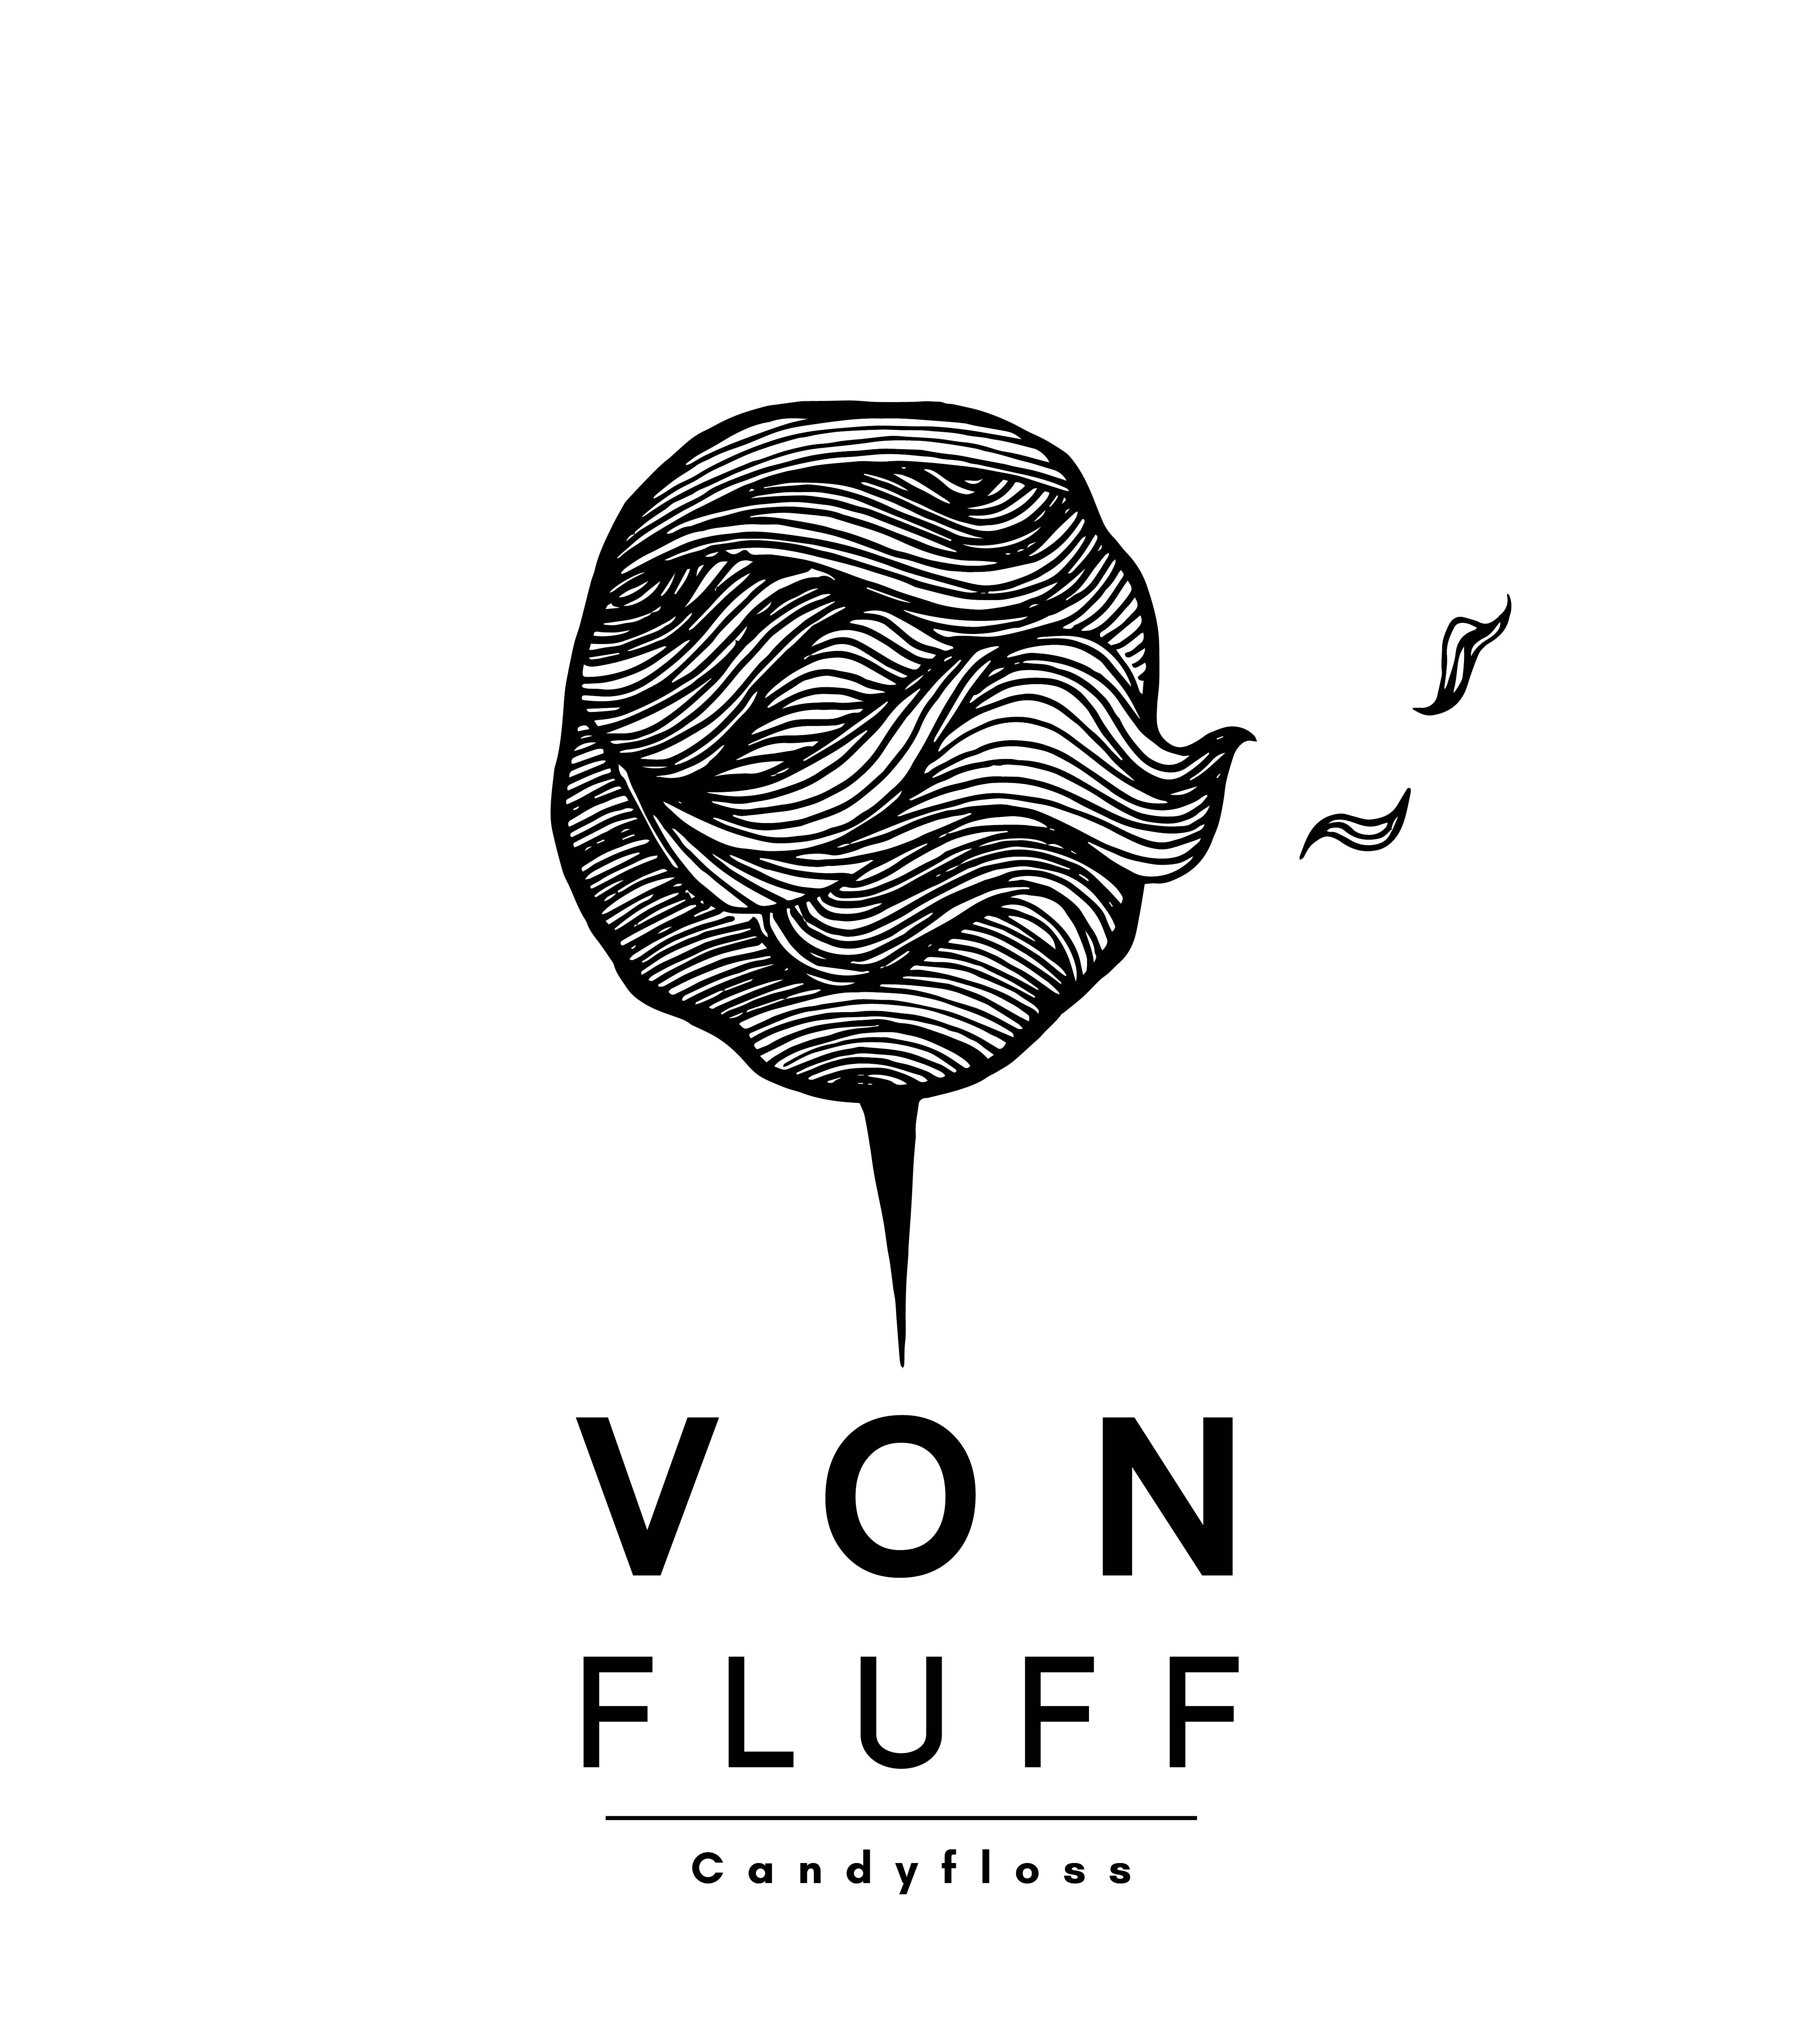 Von fluff logo vector 2018 FINAL